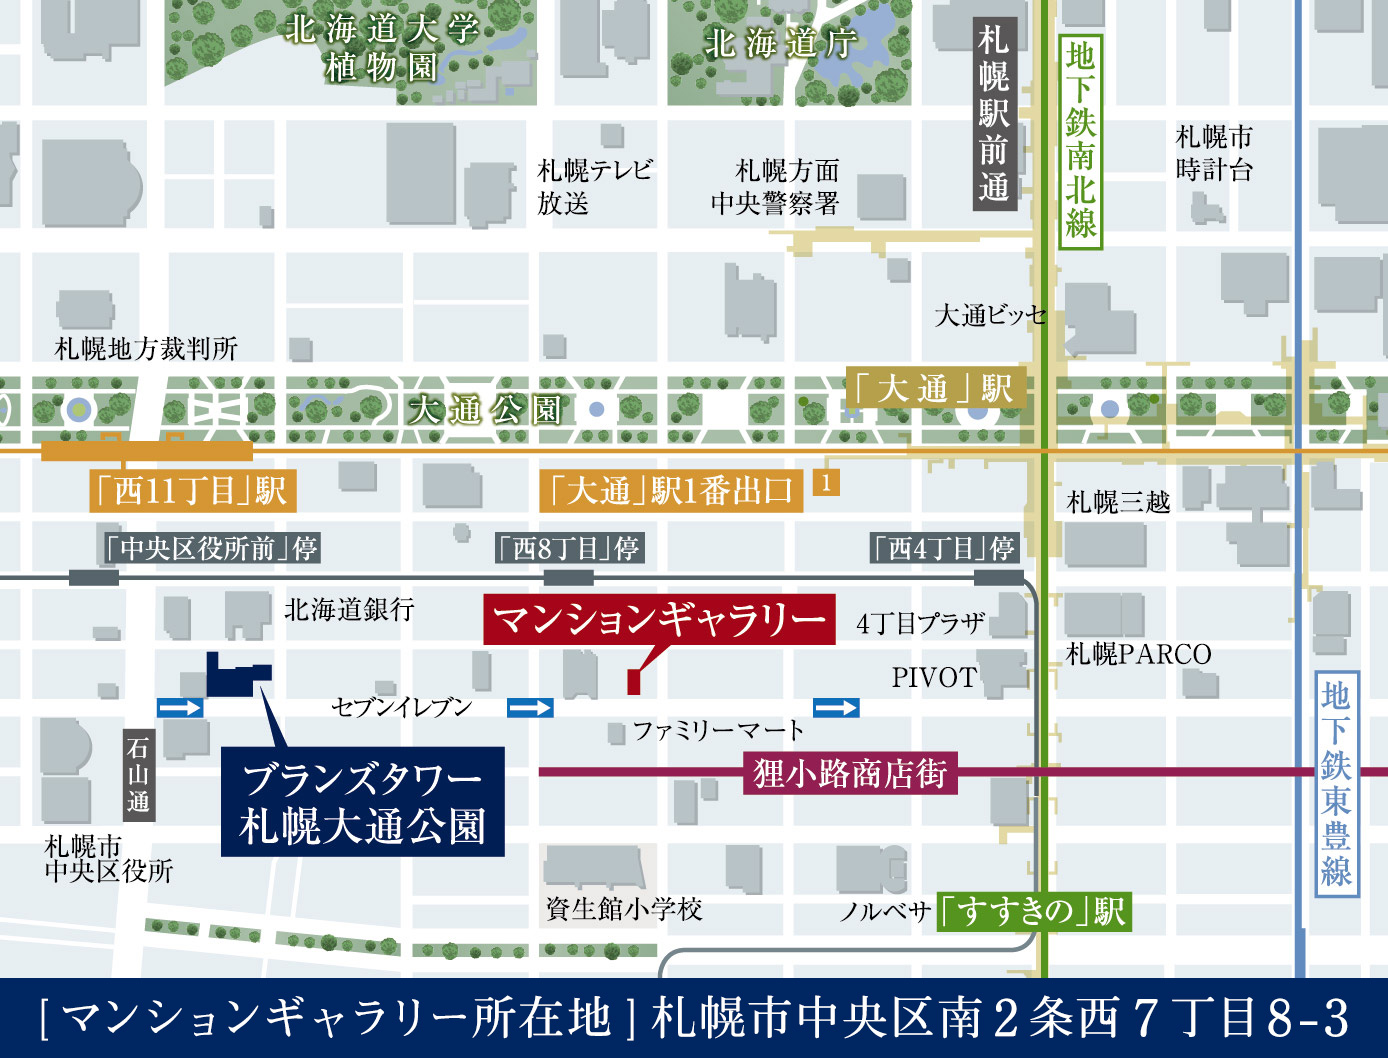 マンションギャラリー所在地は札幌市中央区南2条西7丁目8-3です